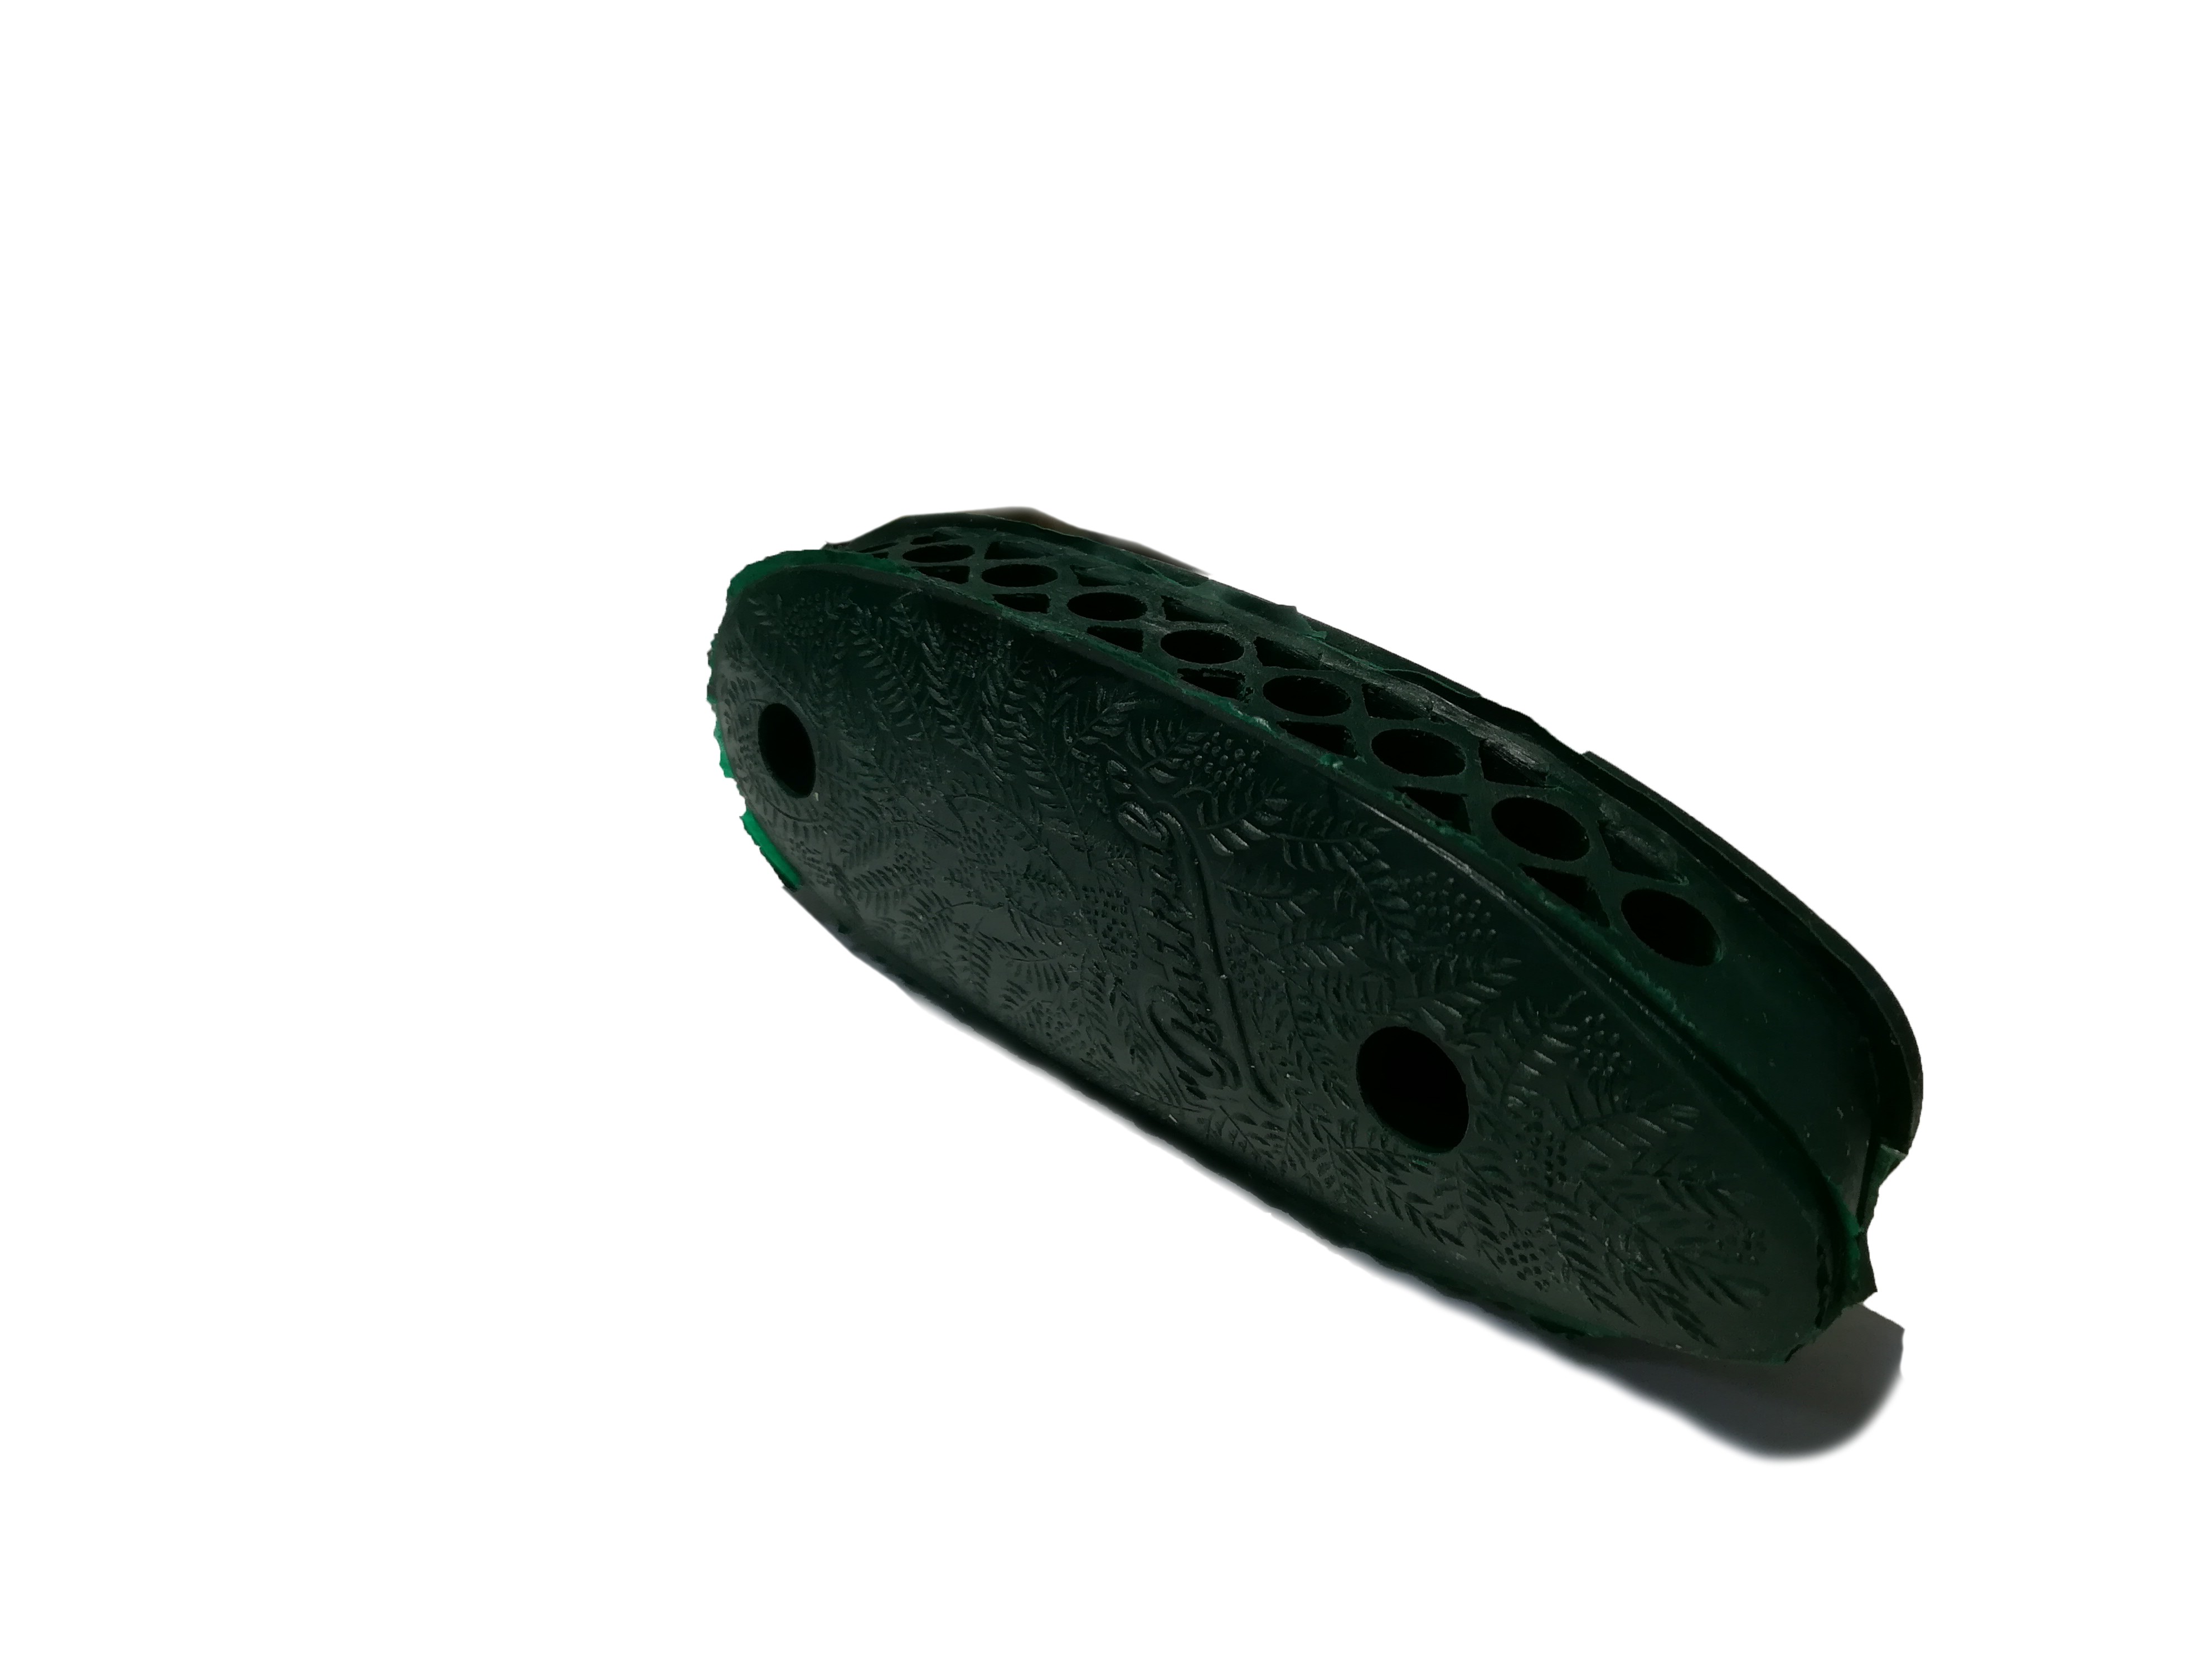 Затыльник-амортизатор Baikal МР 27 резиновый подложка пластик 28мм зеленый - фото 1